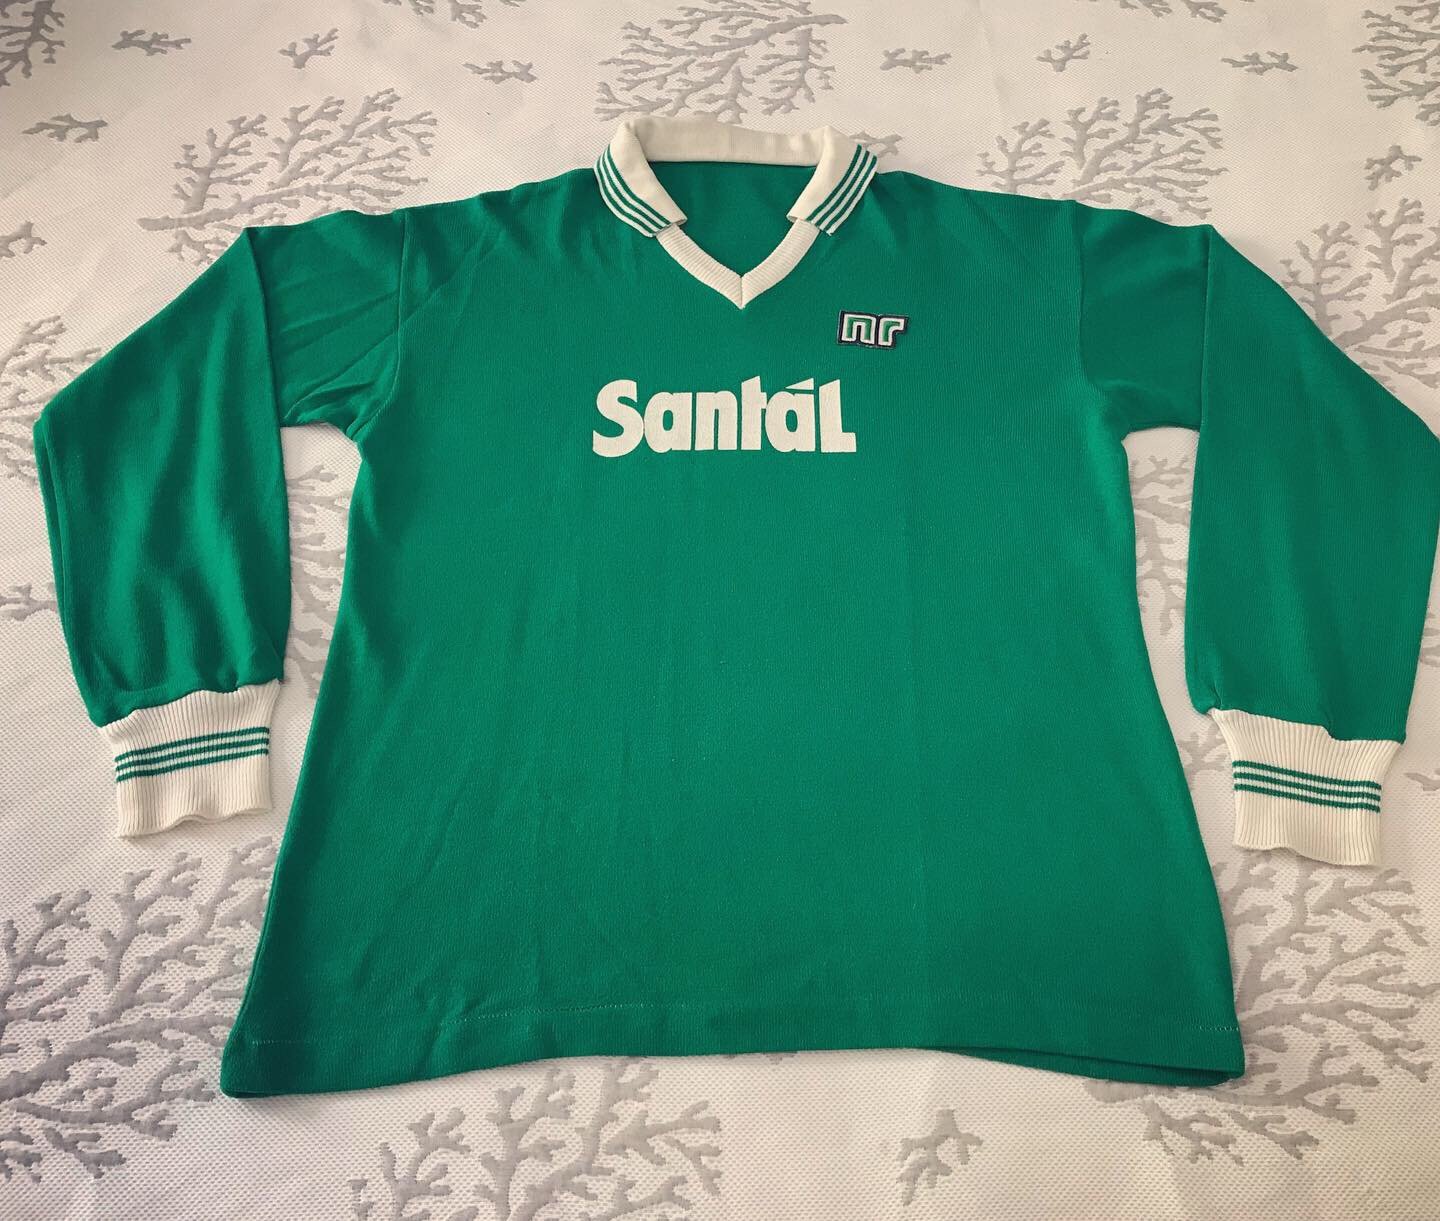 Aanwezigheid Doorzichtig boeren Avellino Home football shirt 1984 - 1986. Sponsored by Santál